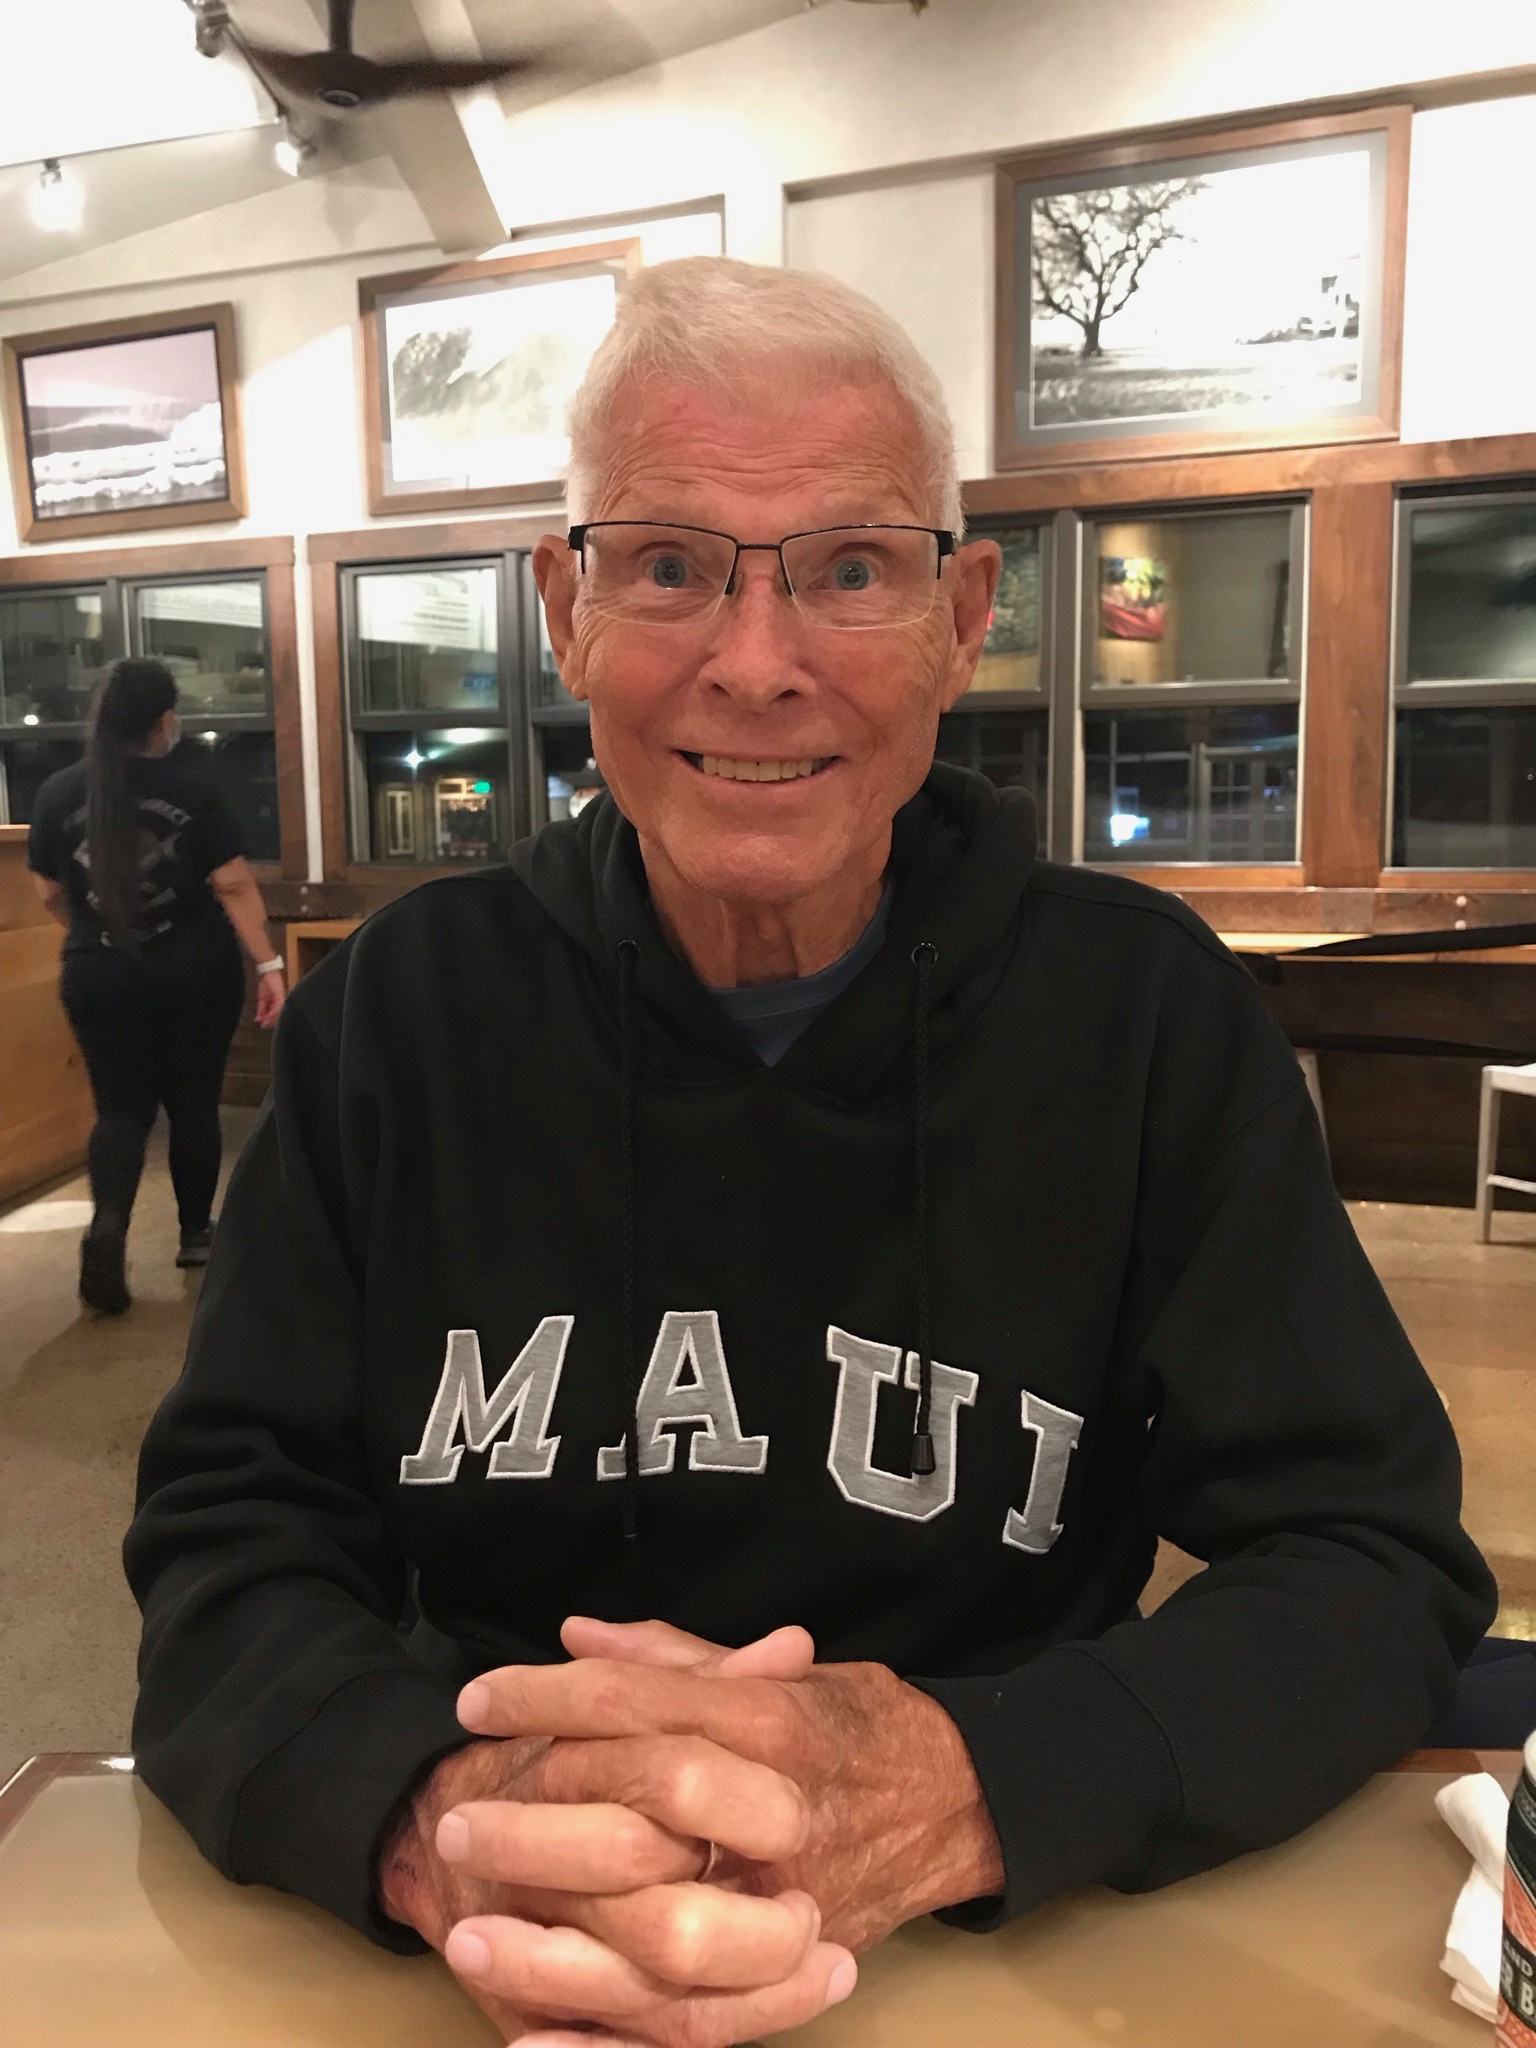 Bob smiling at the camera wearing a sweatshirt that says 'Maui'